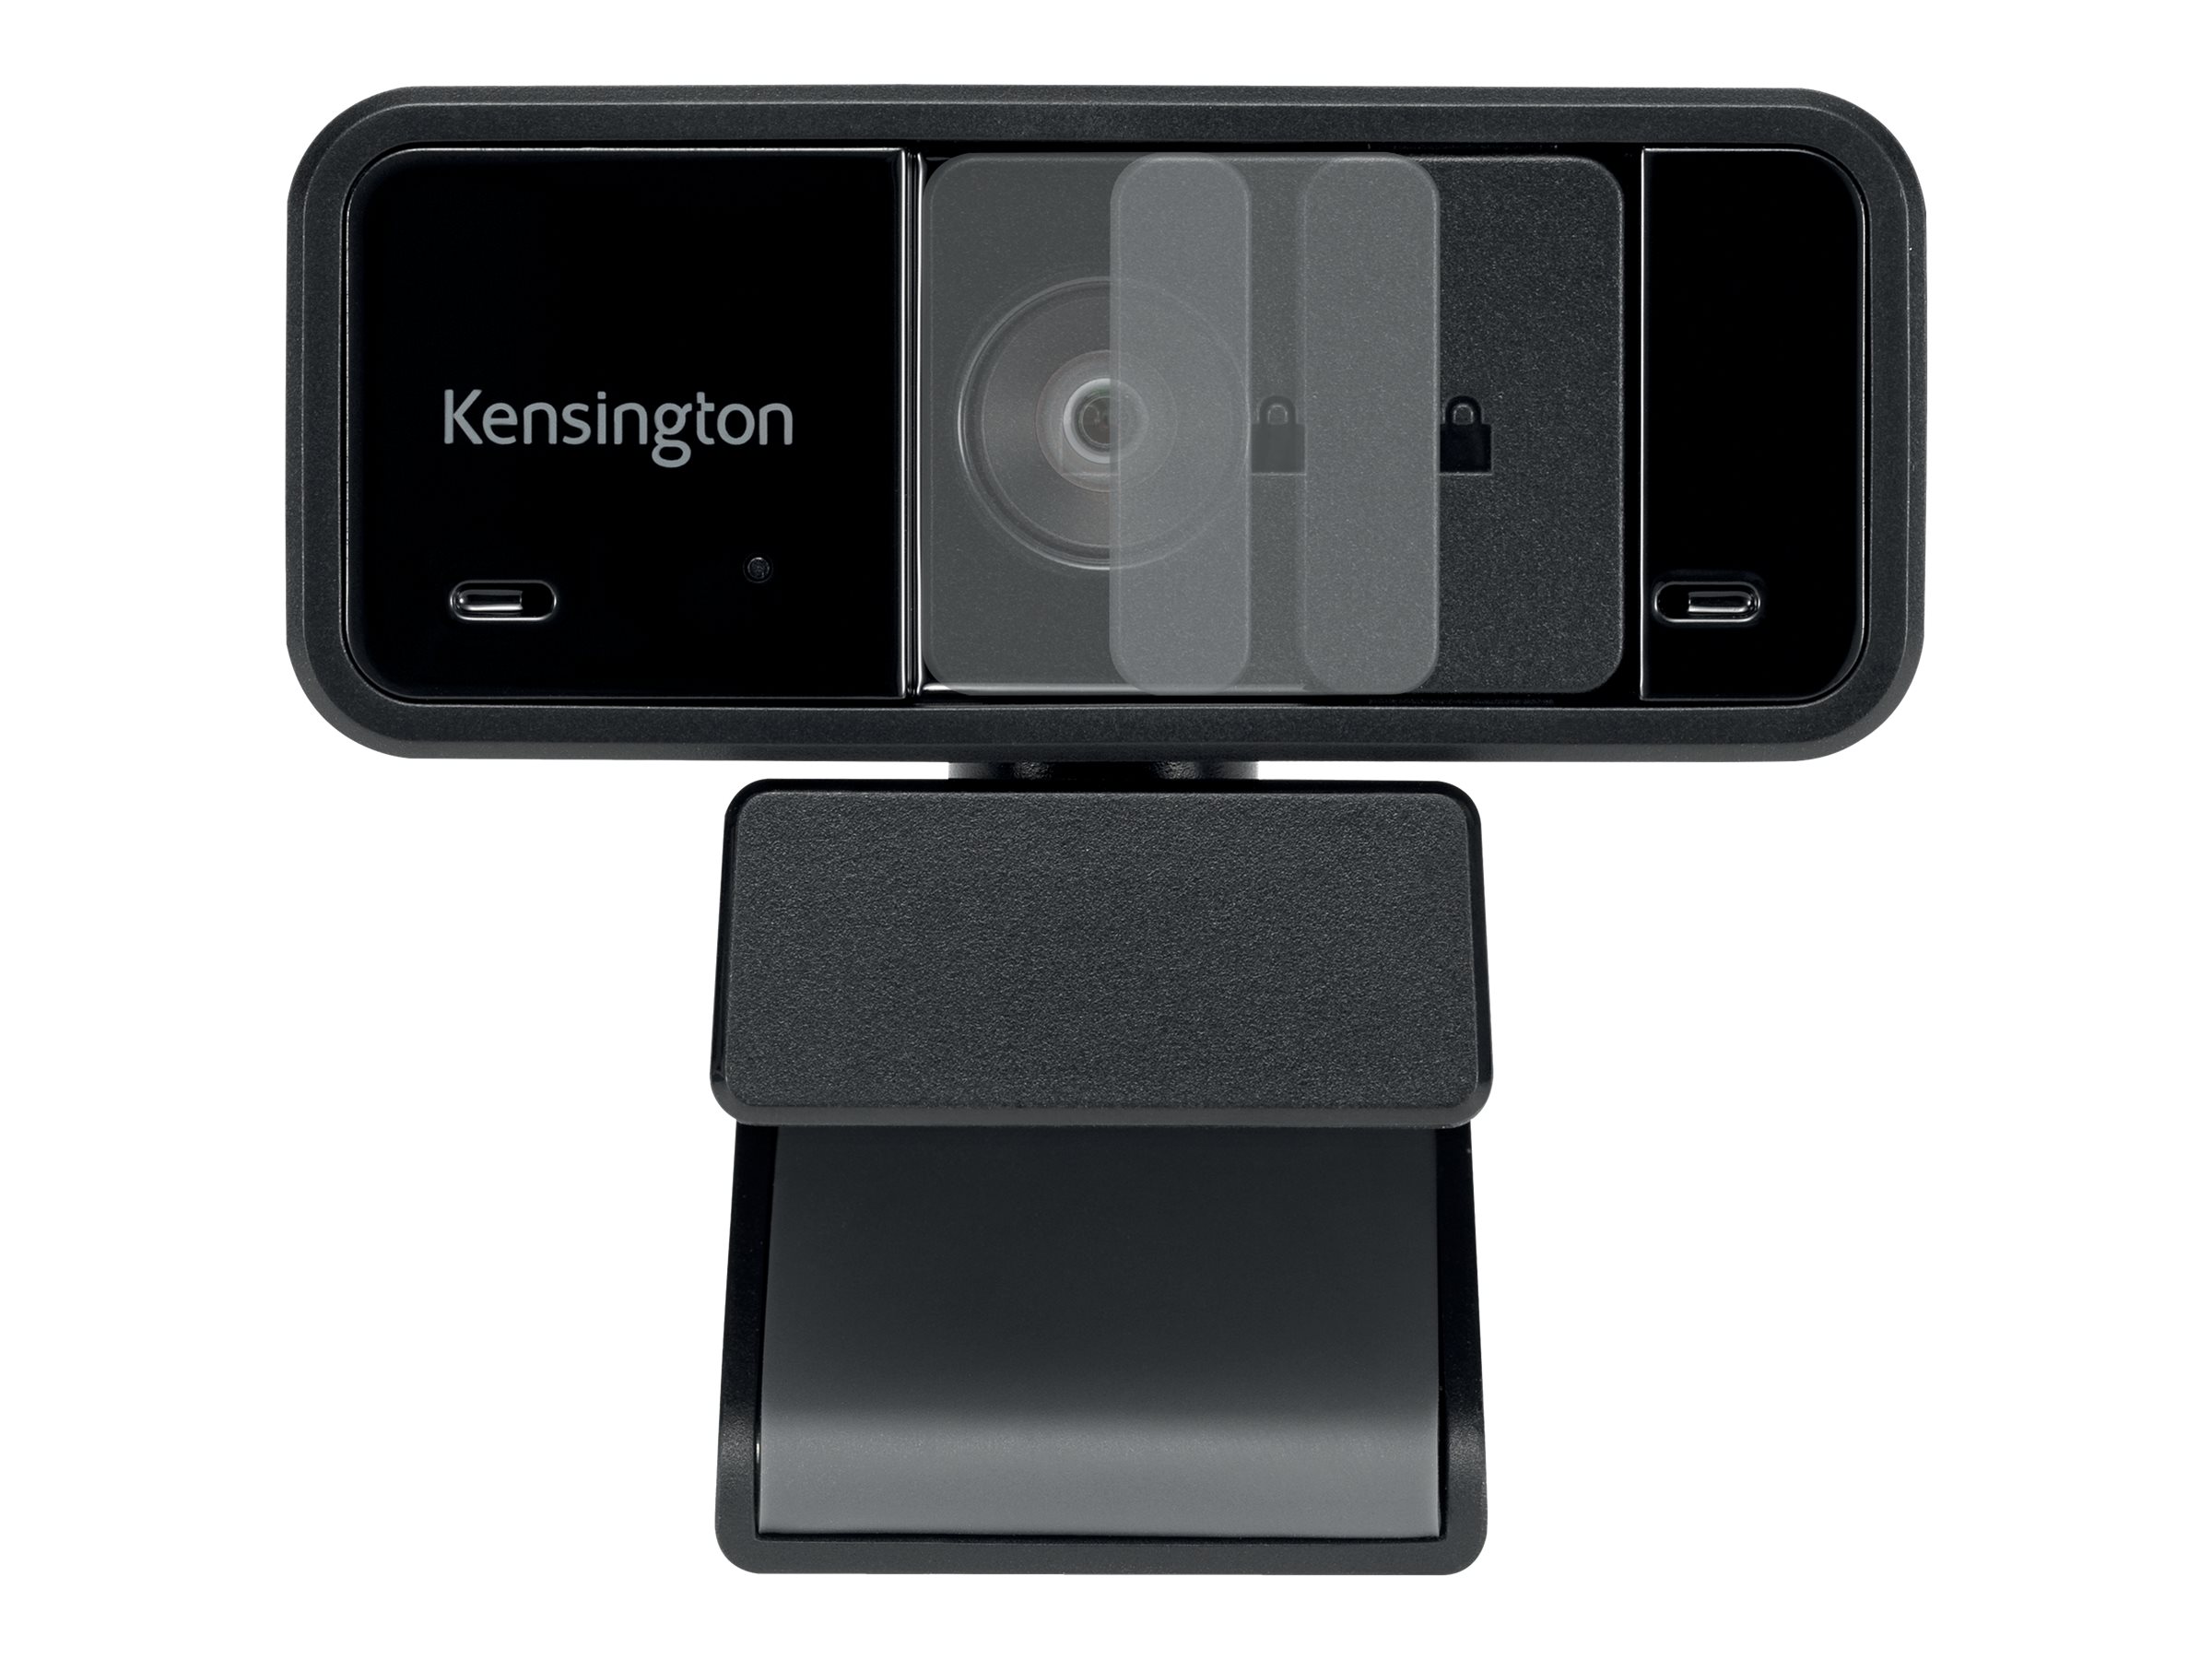 W1050 Webcam 1080p avec grand angle et mise au point fixe, Webcams